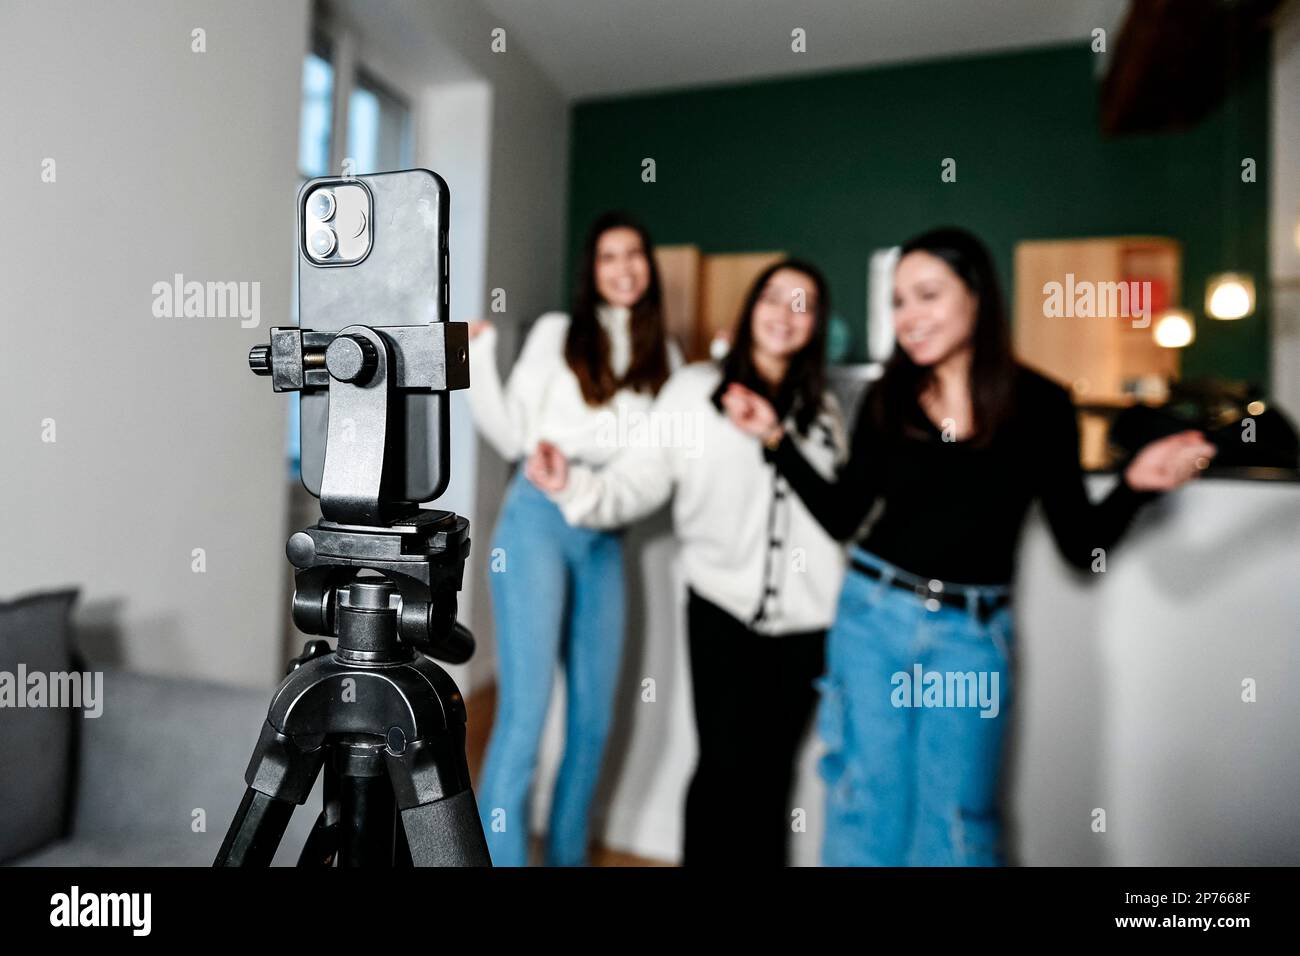 L'illustration montre un téléphone (smartphone) sur un trépied filmant 3  jeunes filles blanches dansant, à la maison, en mode selfie. Concept de  faire une vie avec des vidéos sur l'Internet en étant